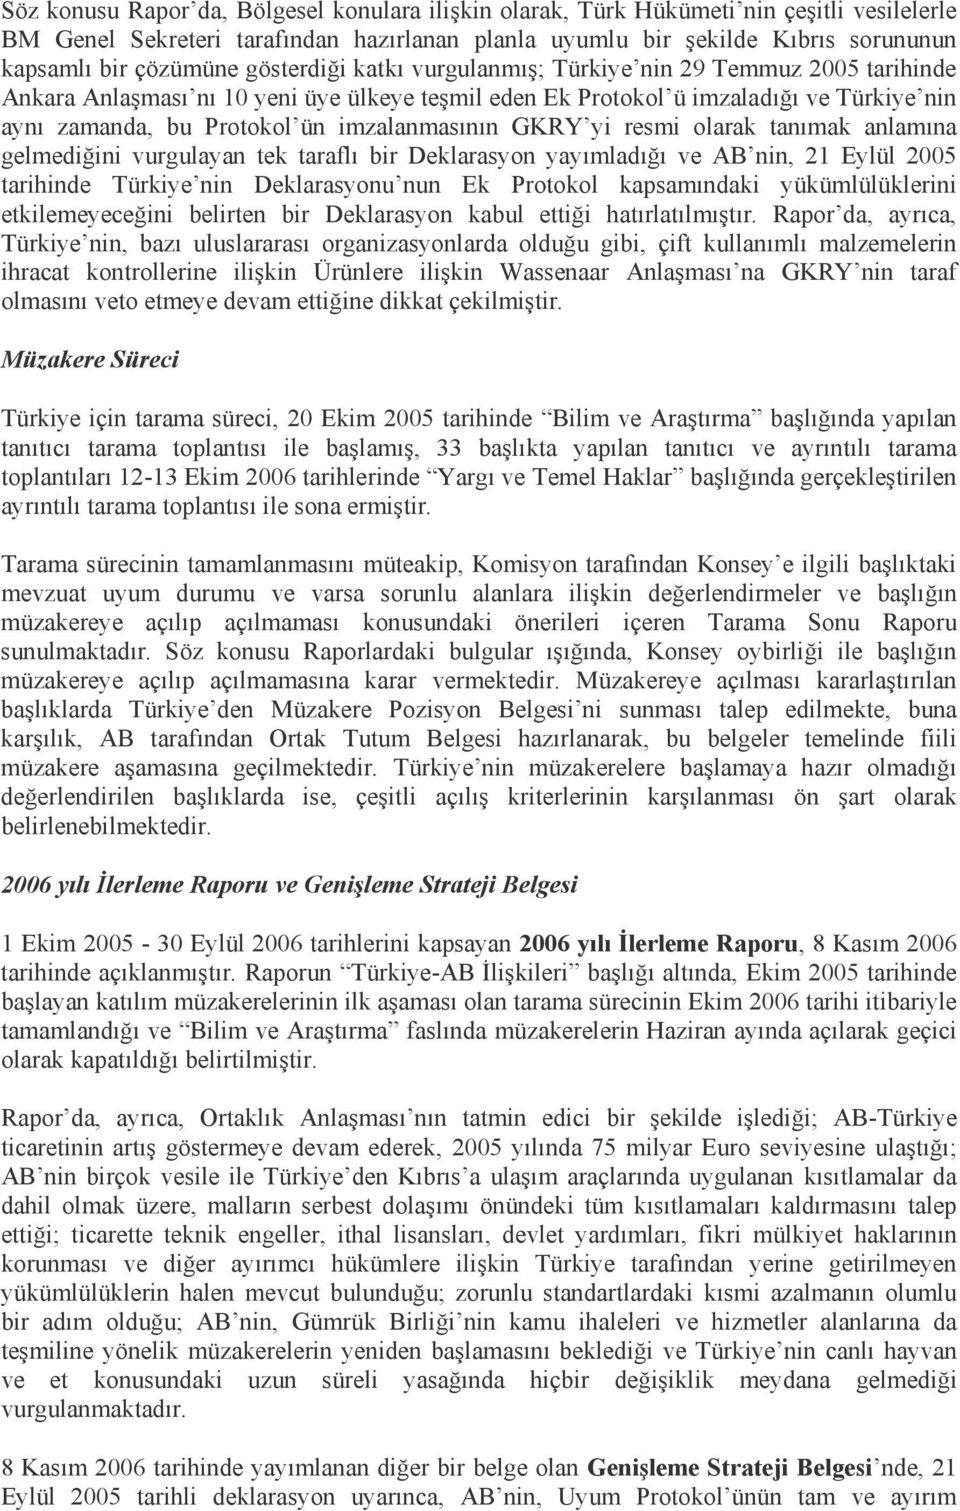 imzalanmasının GKRY yi resmi olarak tanımak anlamına gelmediğini vurgulayan tek taraflı bir Deklarasyon yayımladığı ve AB nin, 21 Eylül 2005 tarihinde Türkiye nin Deklarasyonu nun Ek Protokol